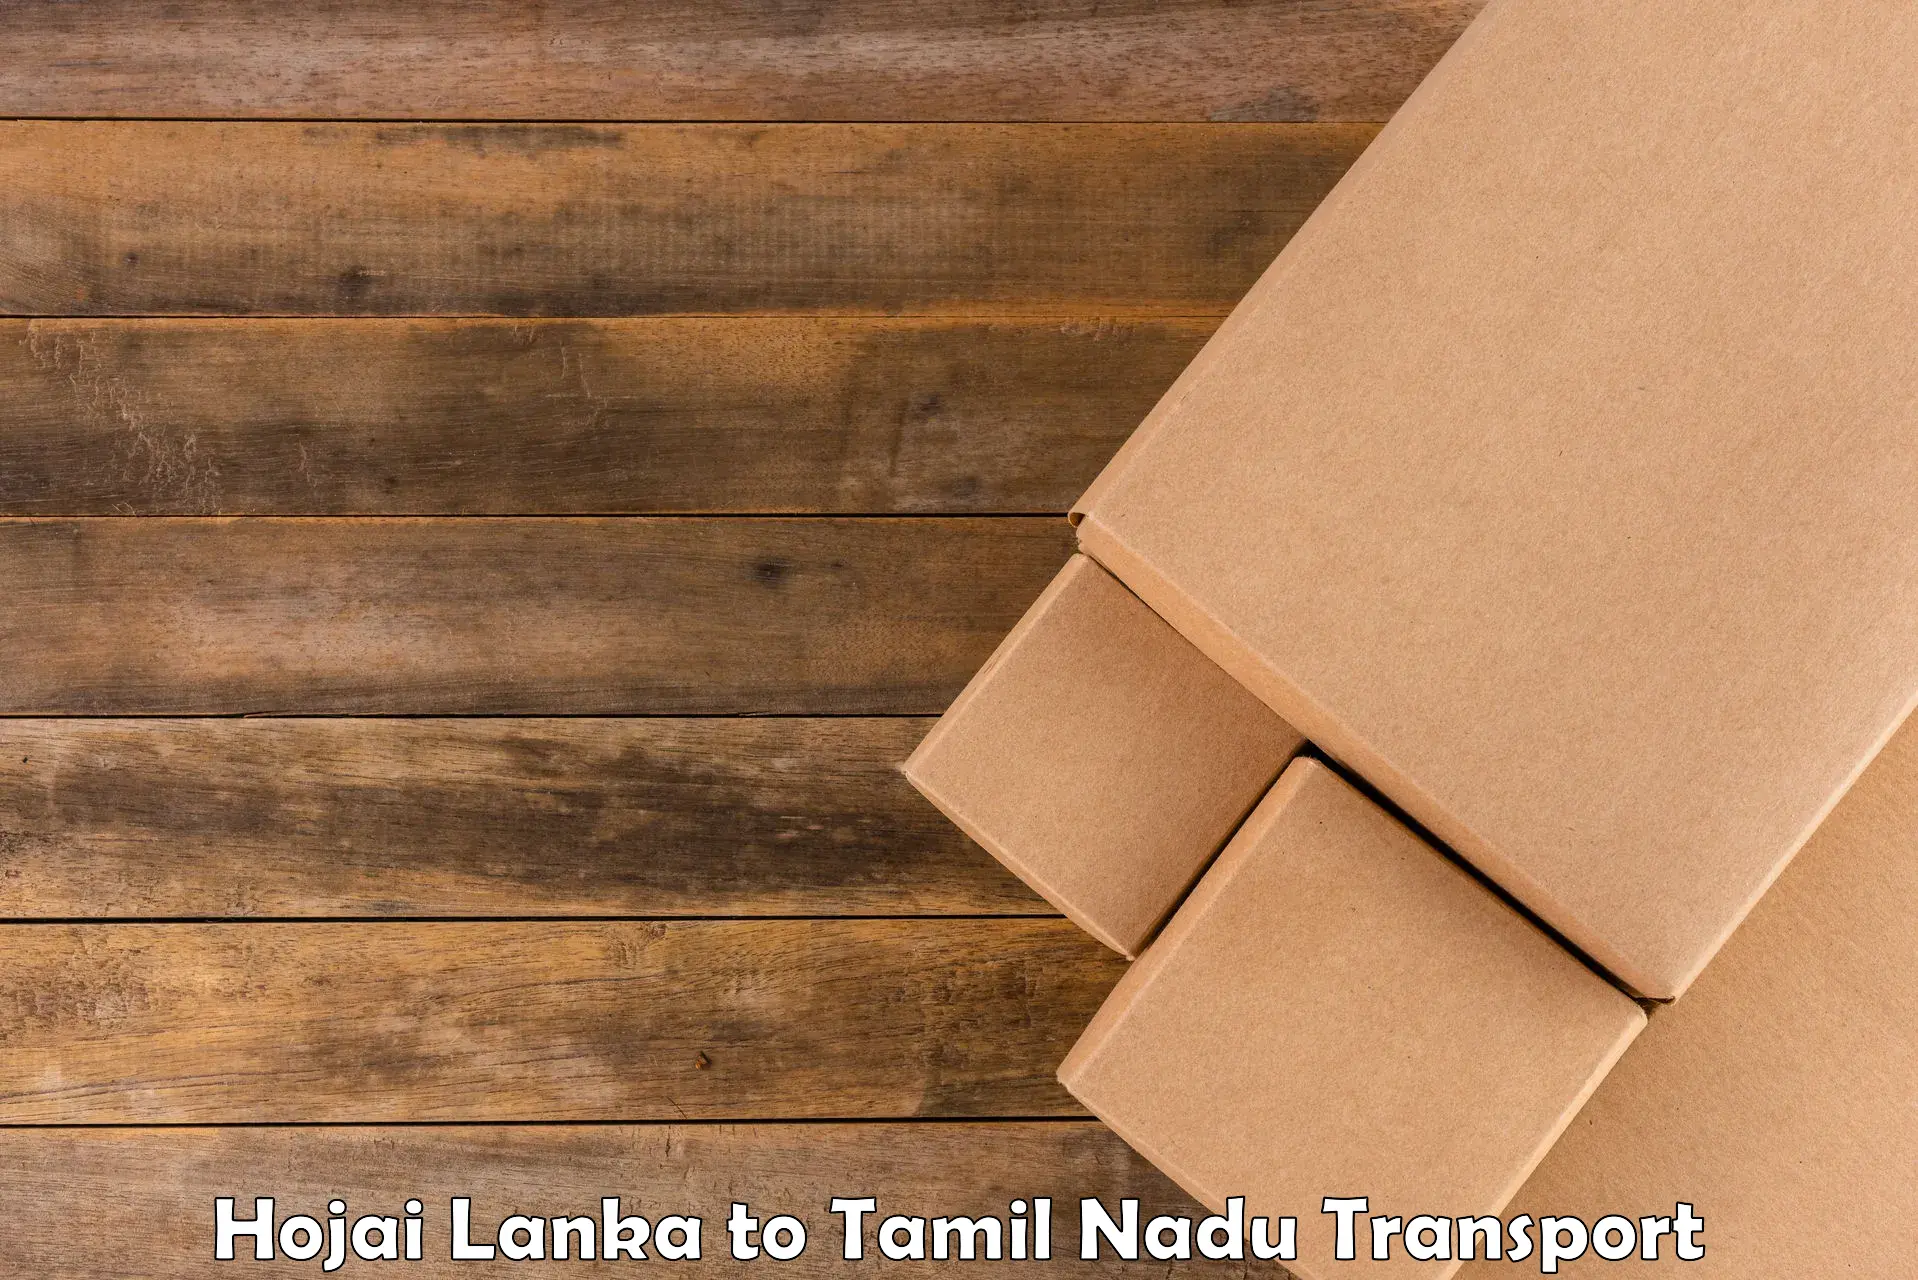 Lorry transport service Hojai Lanka to Vadipatti